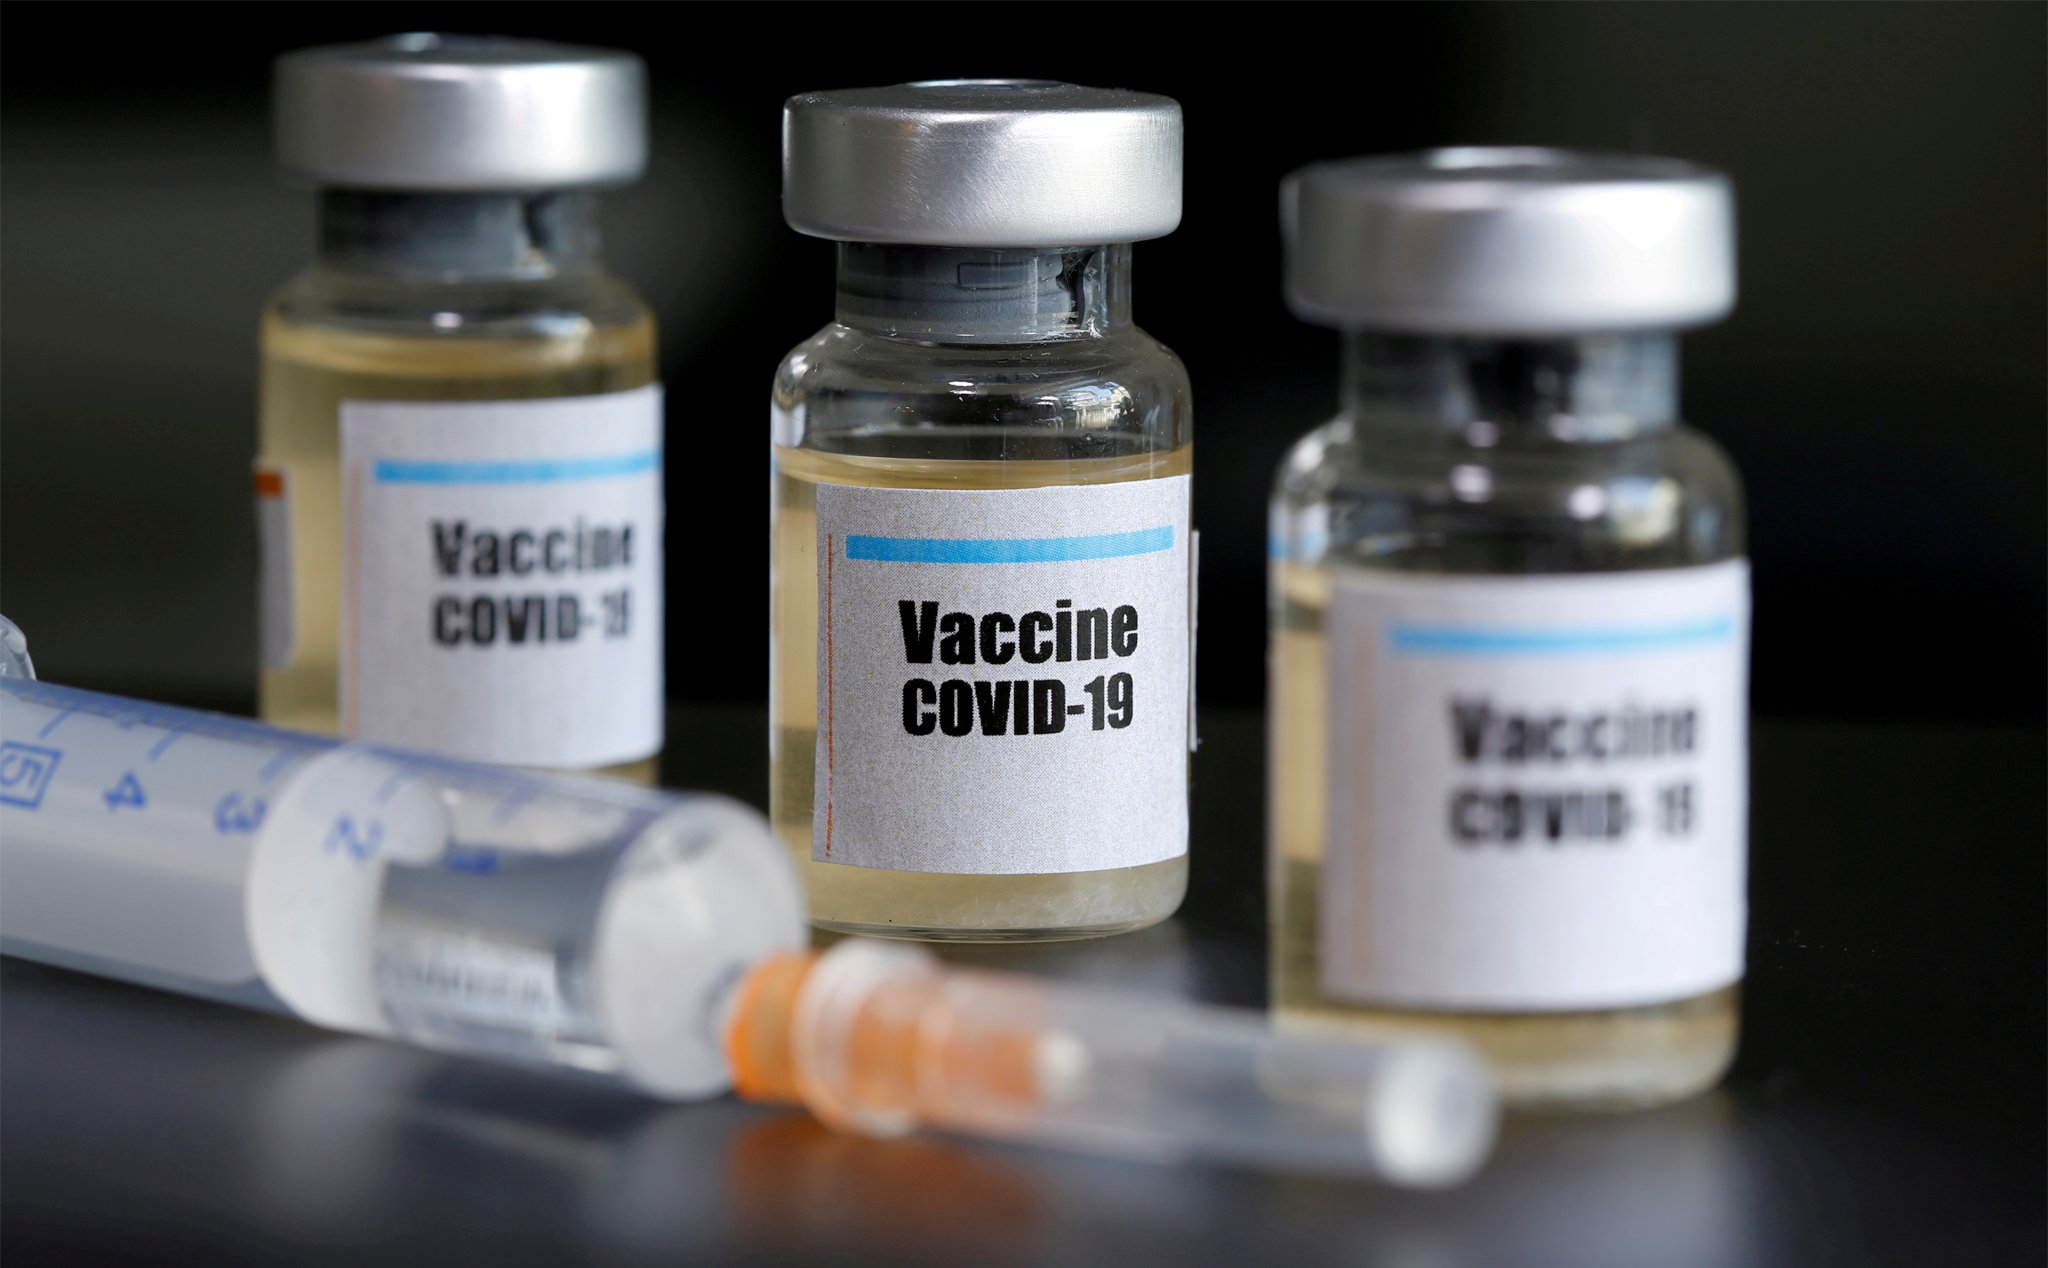 Vaccine COVID-19 "made in VN": Bước đầu thử nghiệm thành công trên chuột , vượt tiến độ 2 tháng